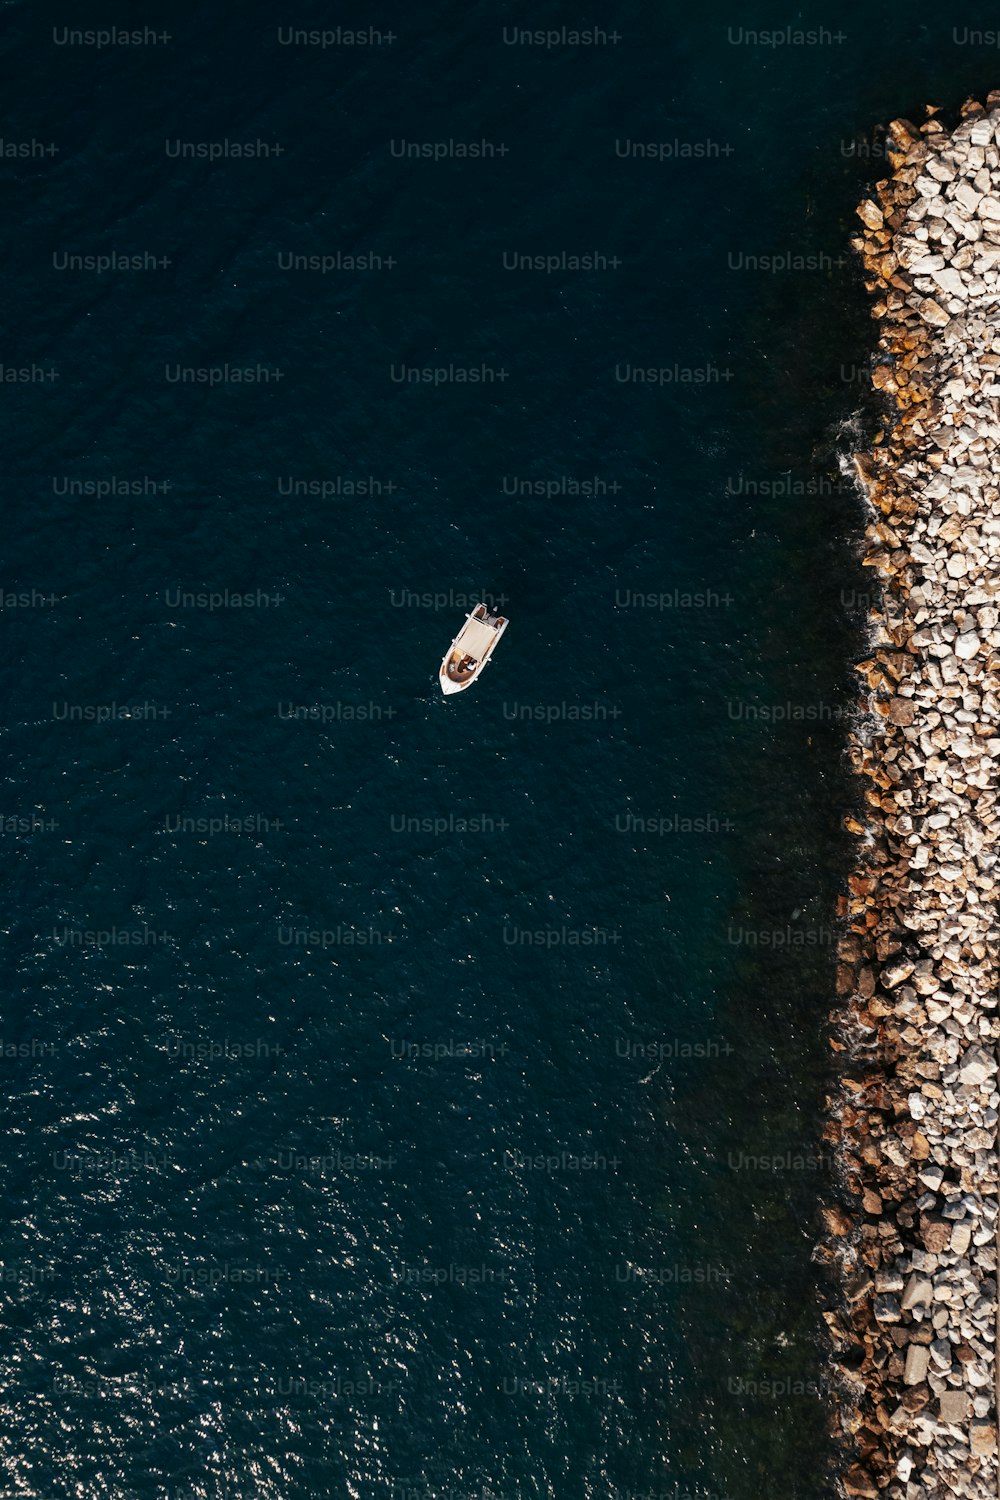 uma vista aérea de um barco na água